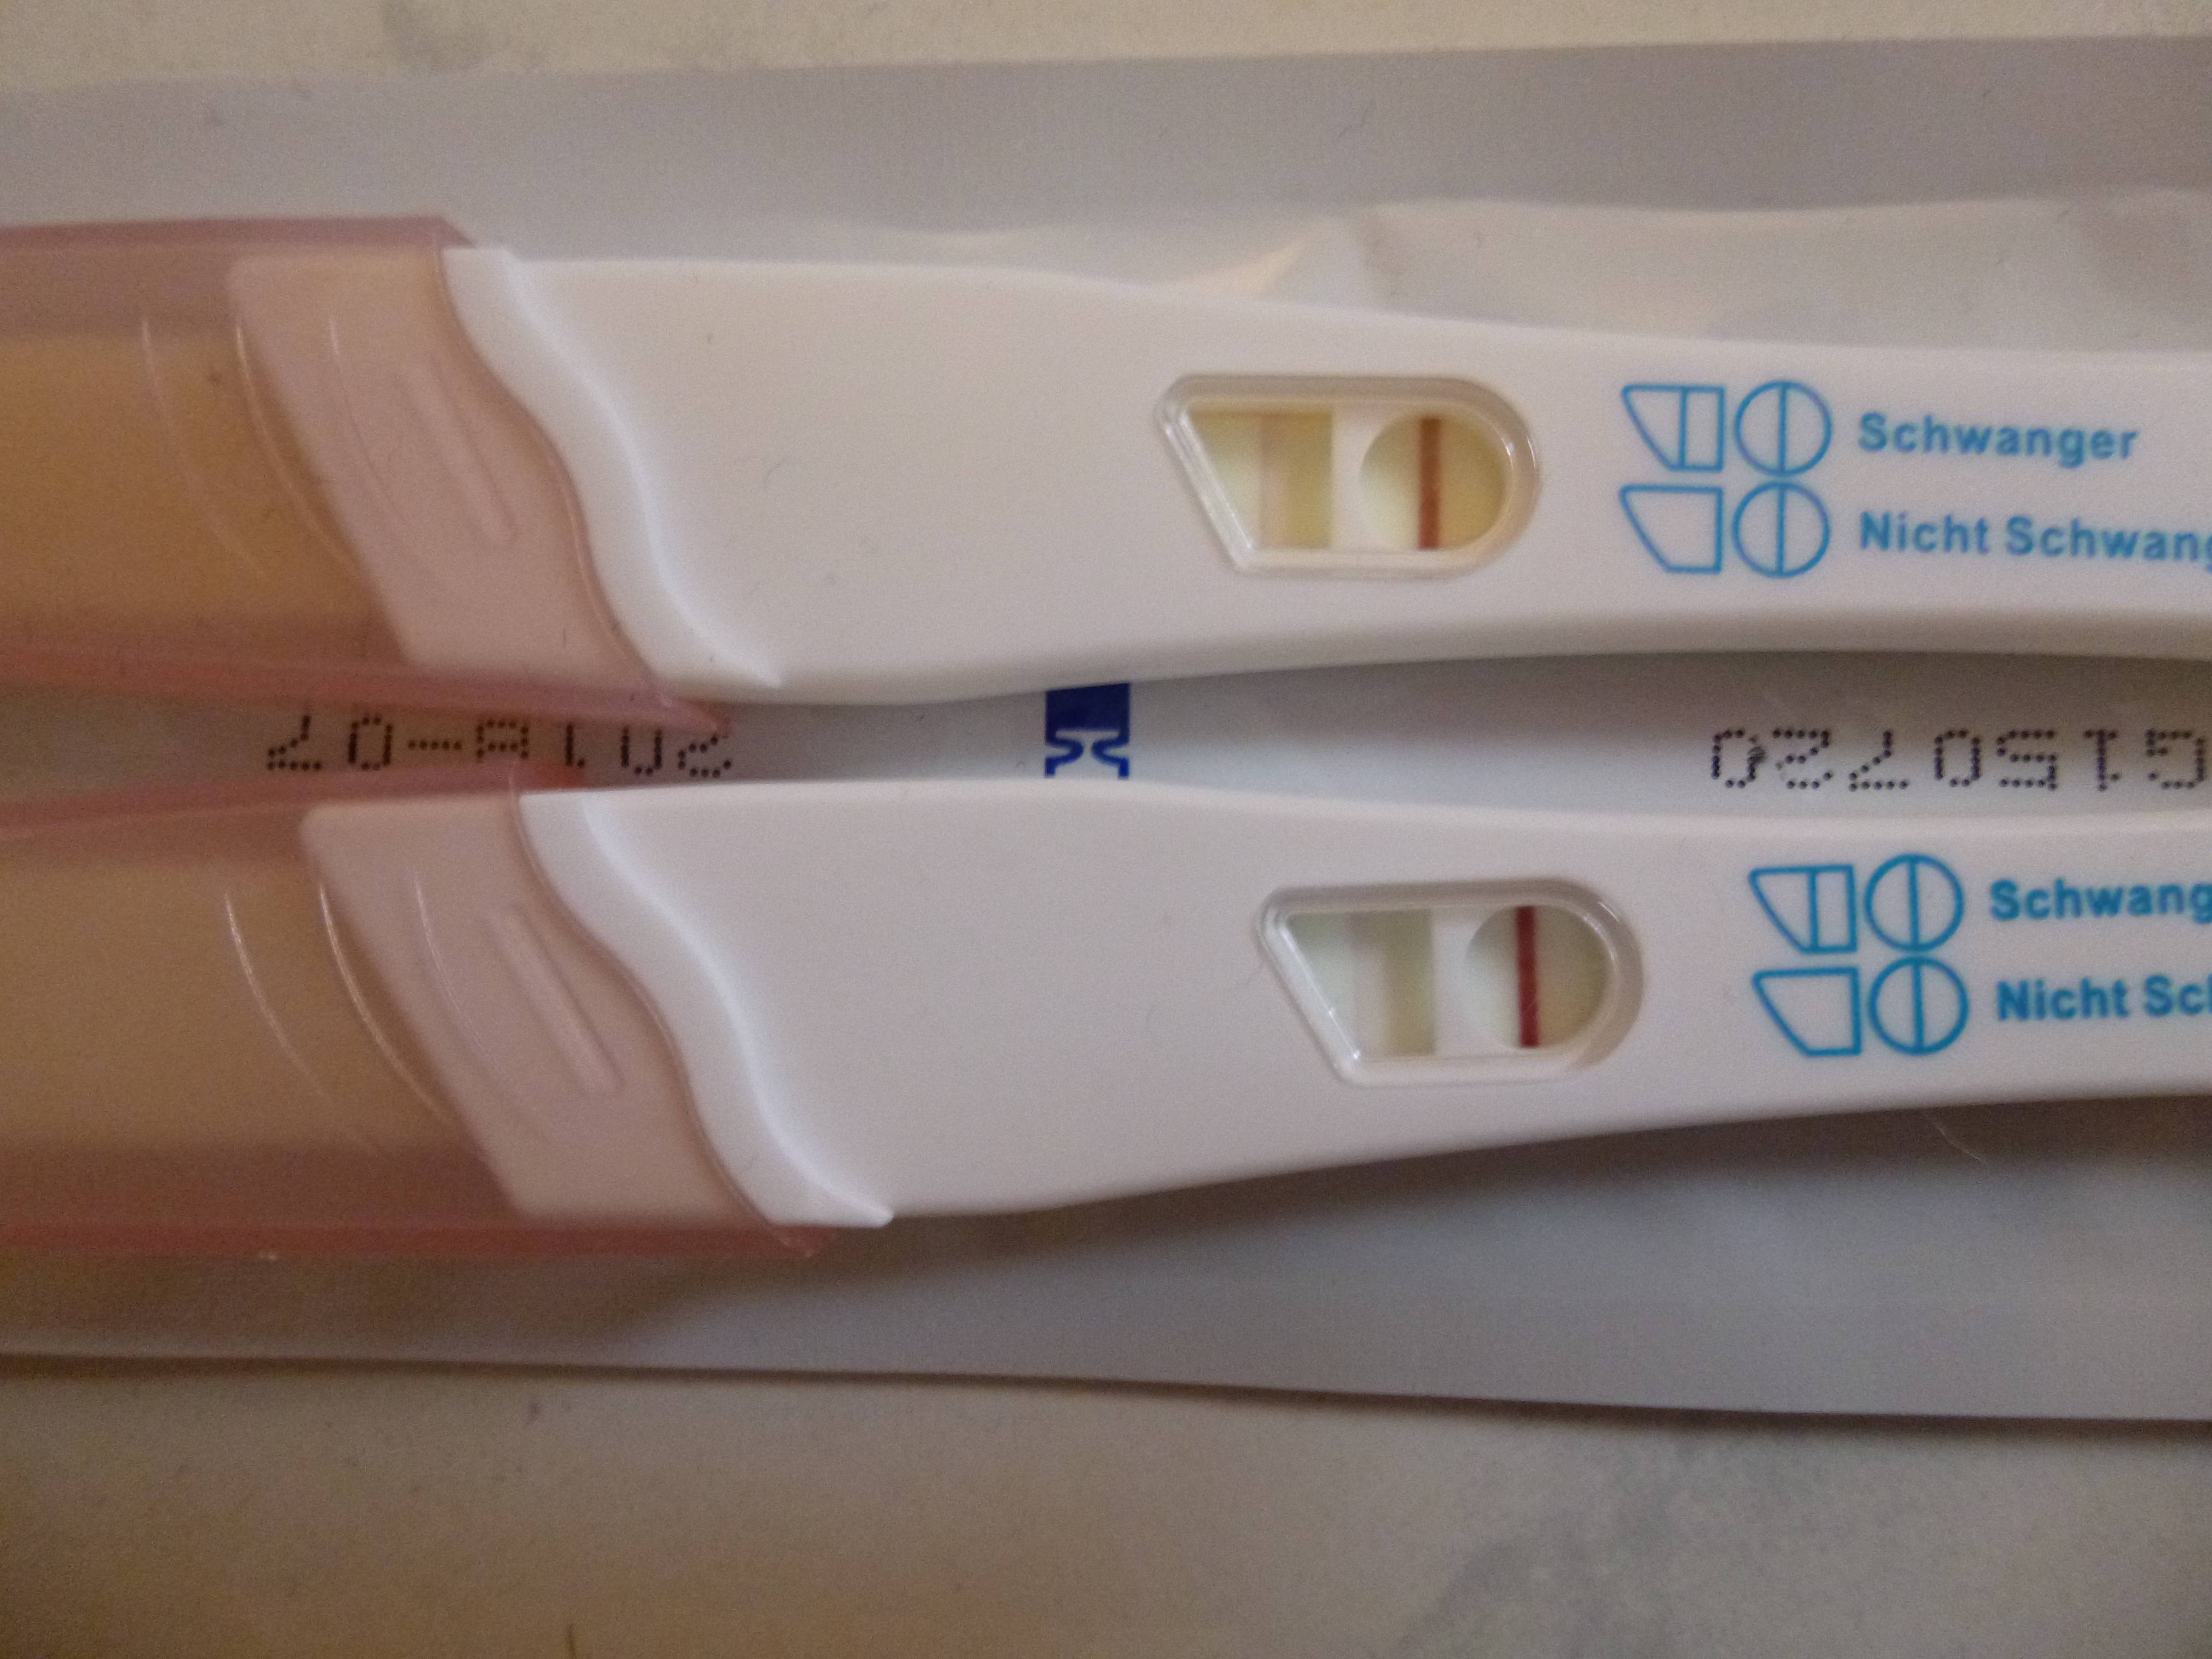 Strich schwangerschaftstest schwacher schwangerschaftstest andeutungsweise